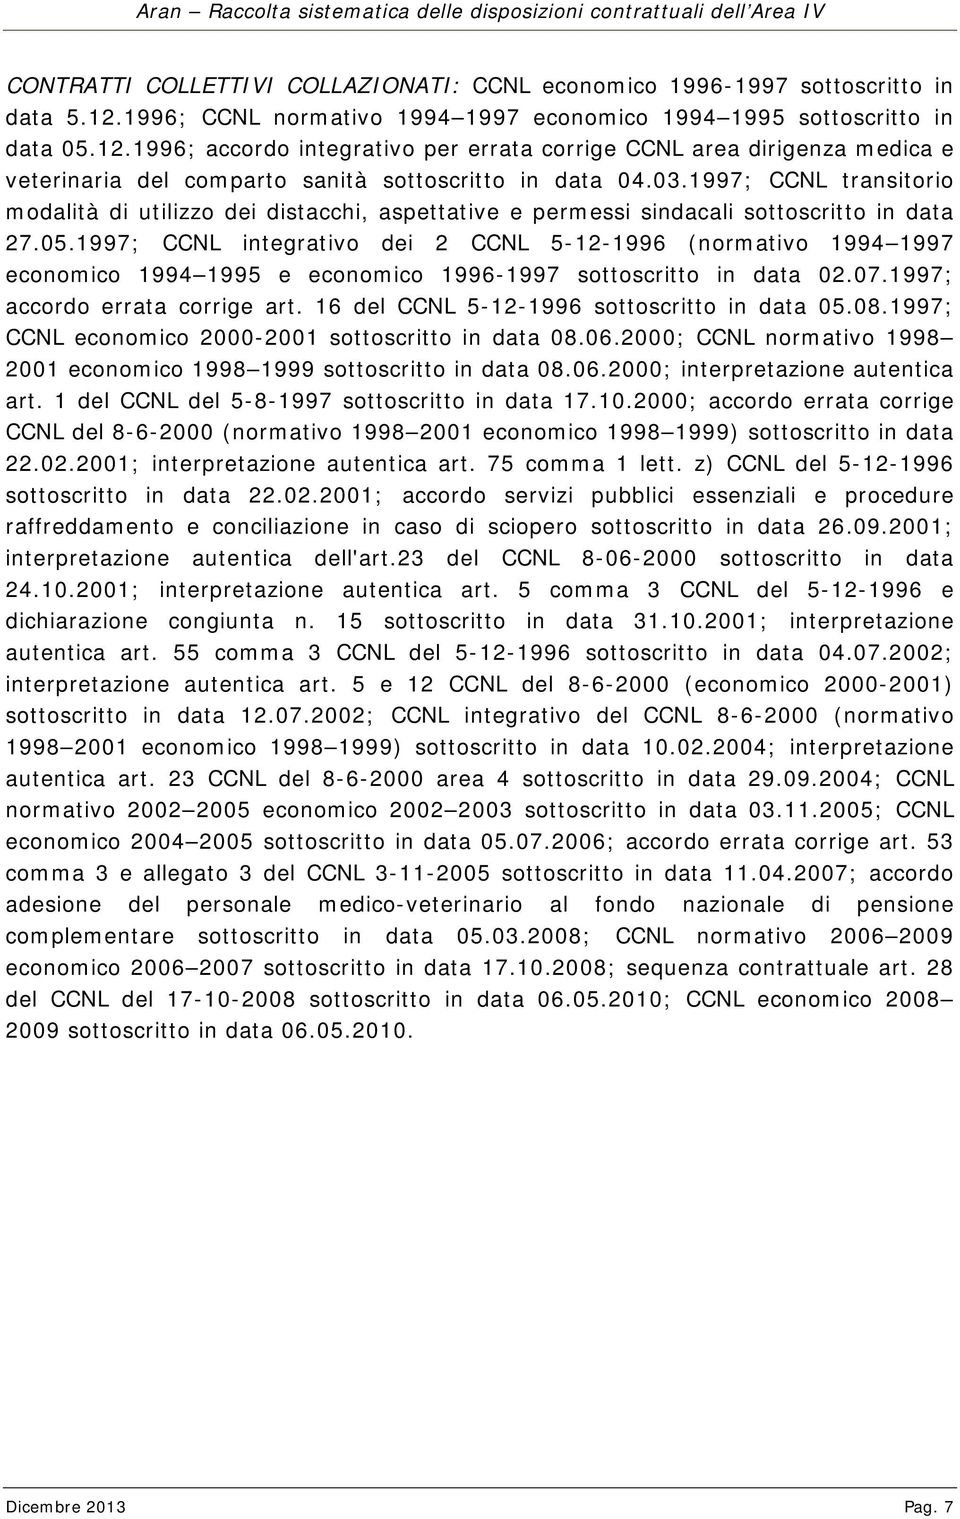 1996; accordo integrativo per errata corrige CCNL area dirigenza medica e veterinaria del comparto sanità sottoscritto in data 04.03.